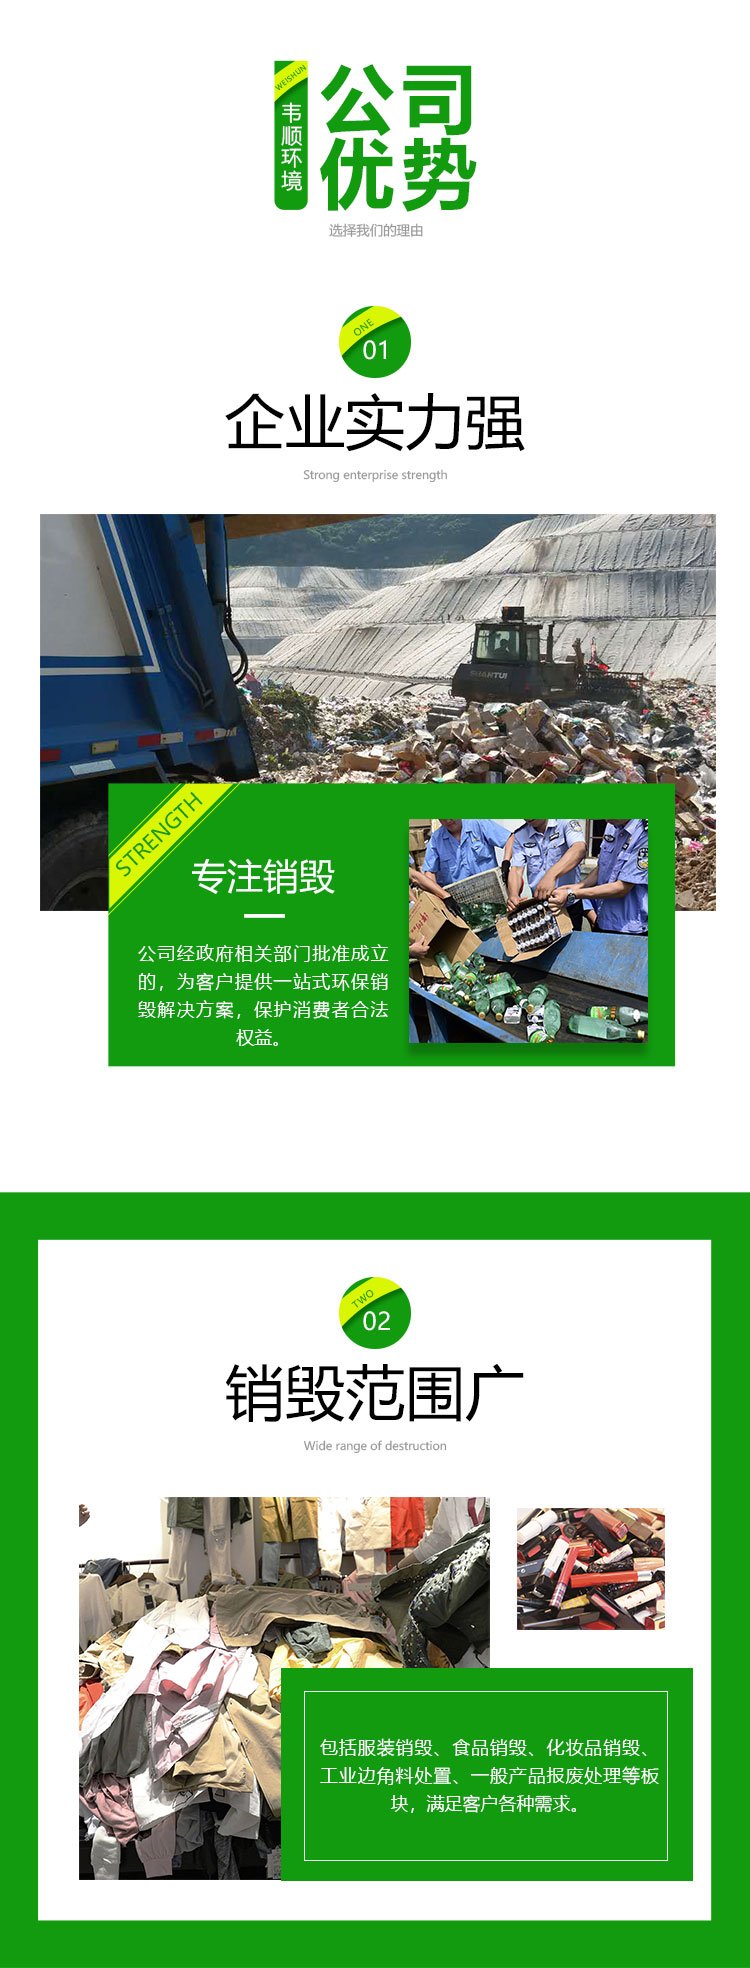 广州番禺区报废标书资料销毁厂家出具销毁证明